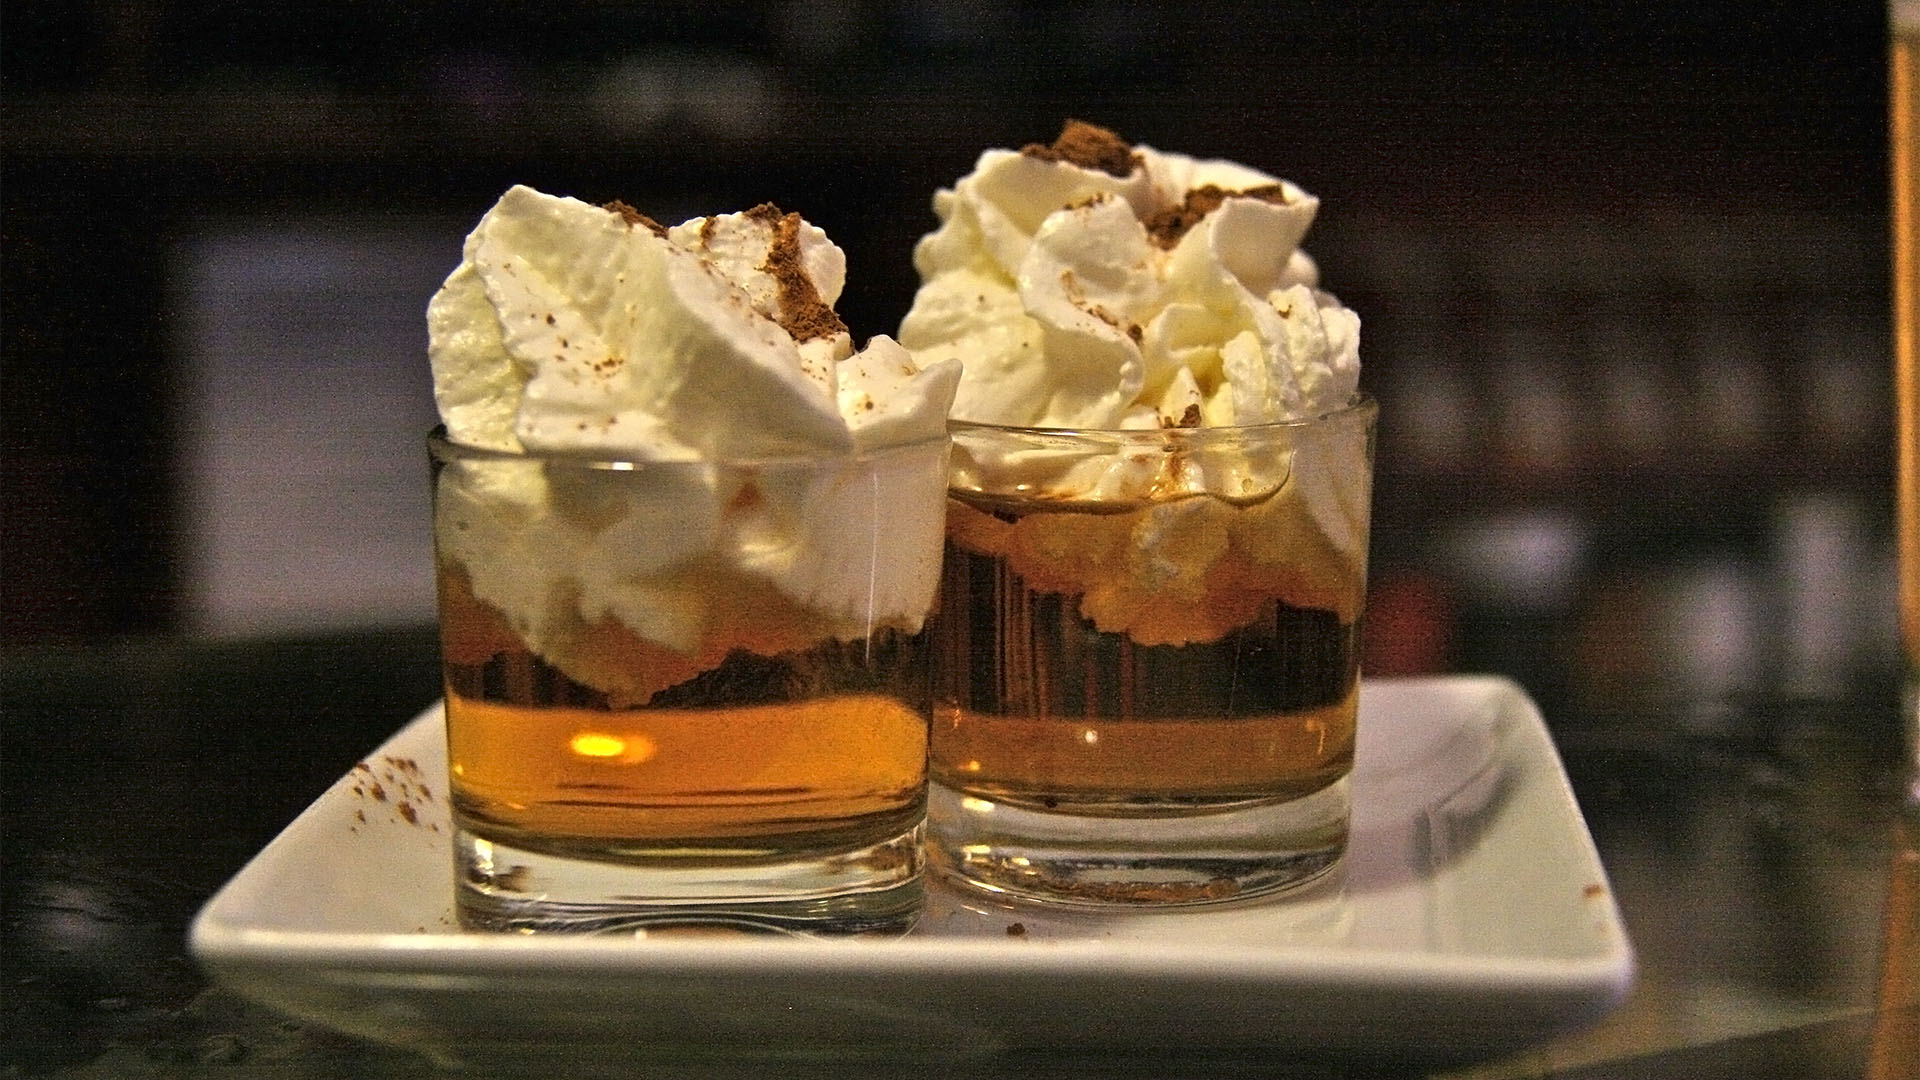 Ron Miel, Honig Rum wird gerne zur Geschmacksverstärkung durch eine Sahnehaube getrunken.